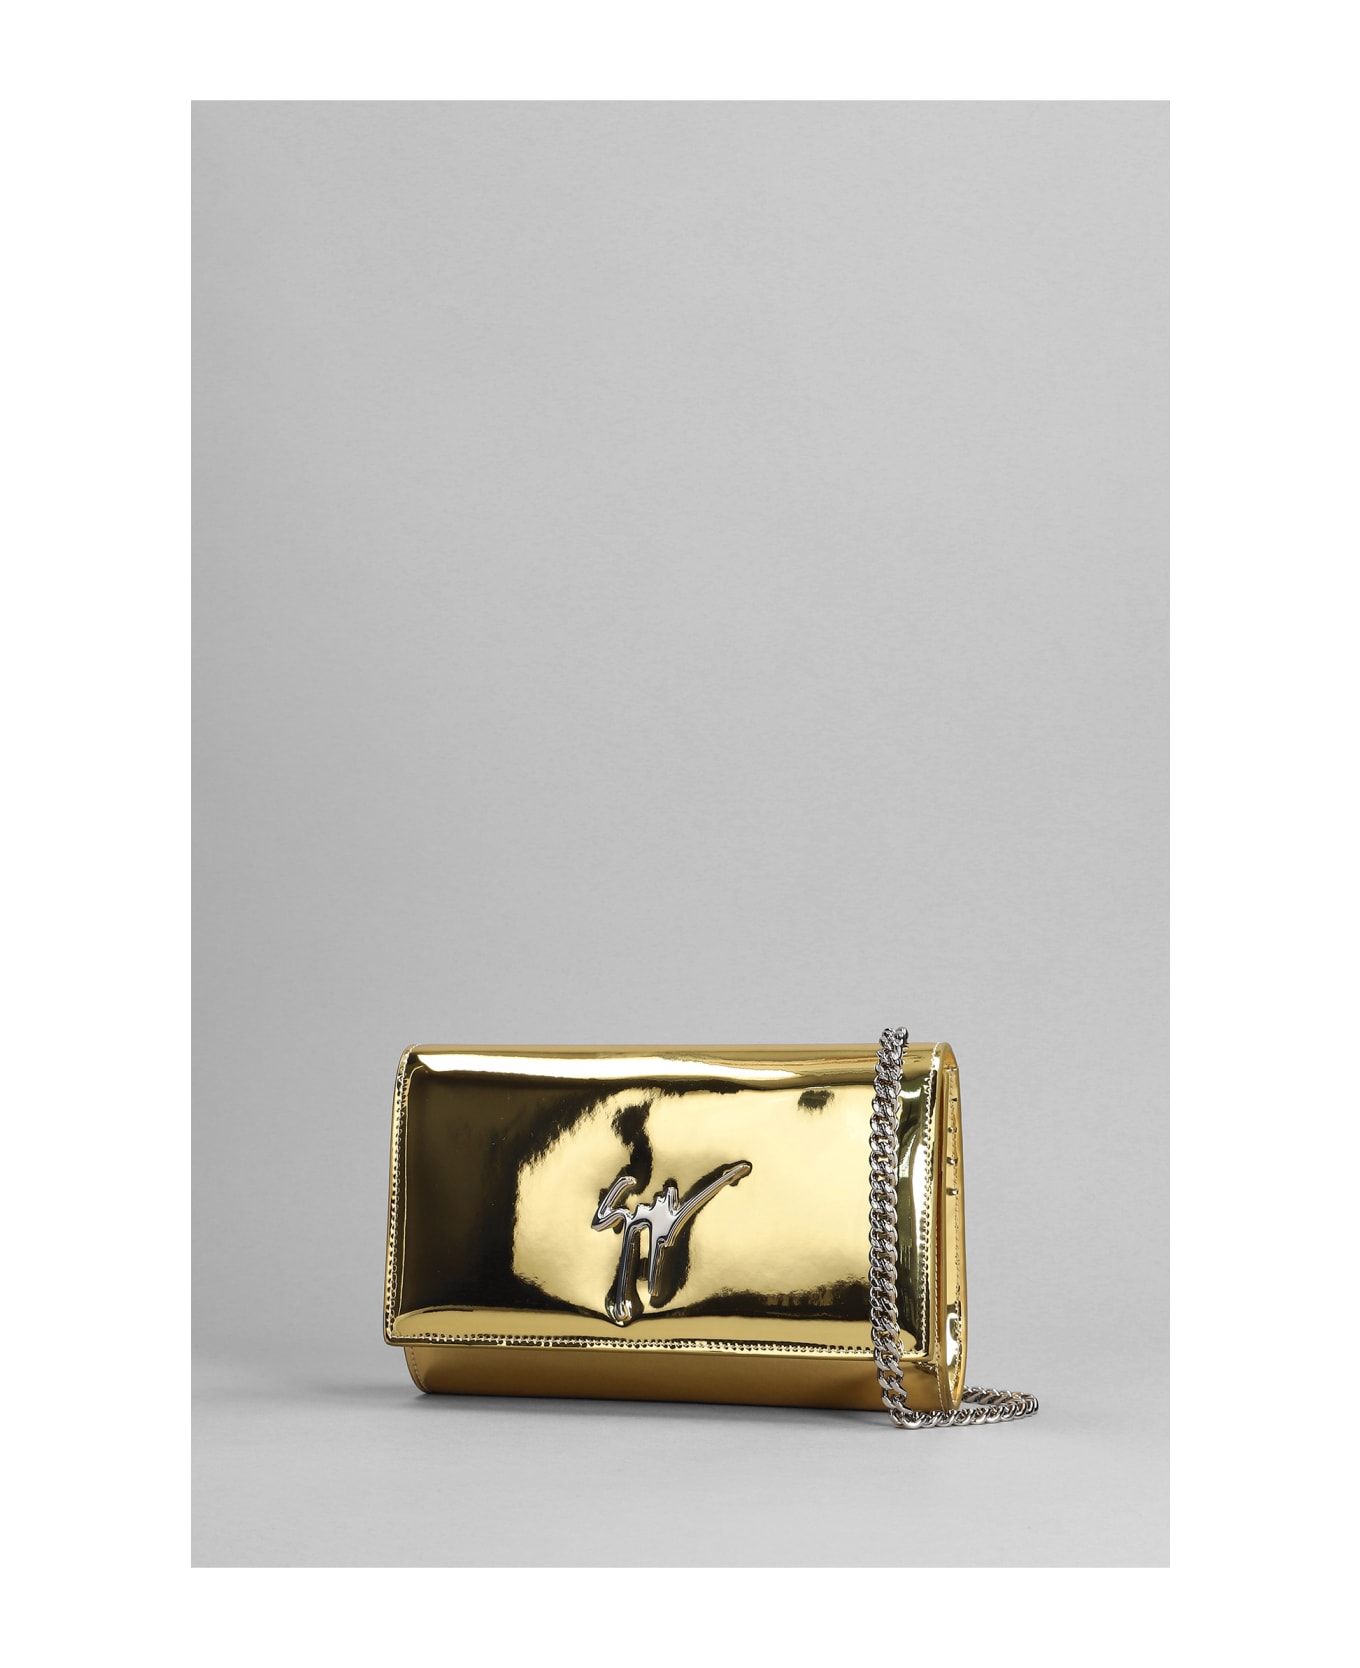 Giuseppe Zanotti Cleopatra Clutch In Gold Leather - gold